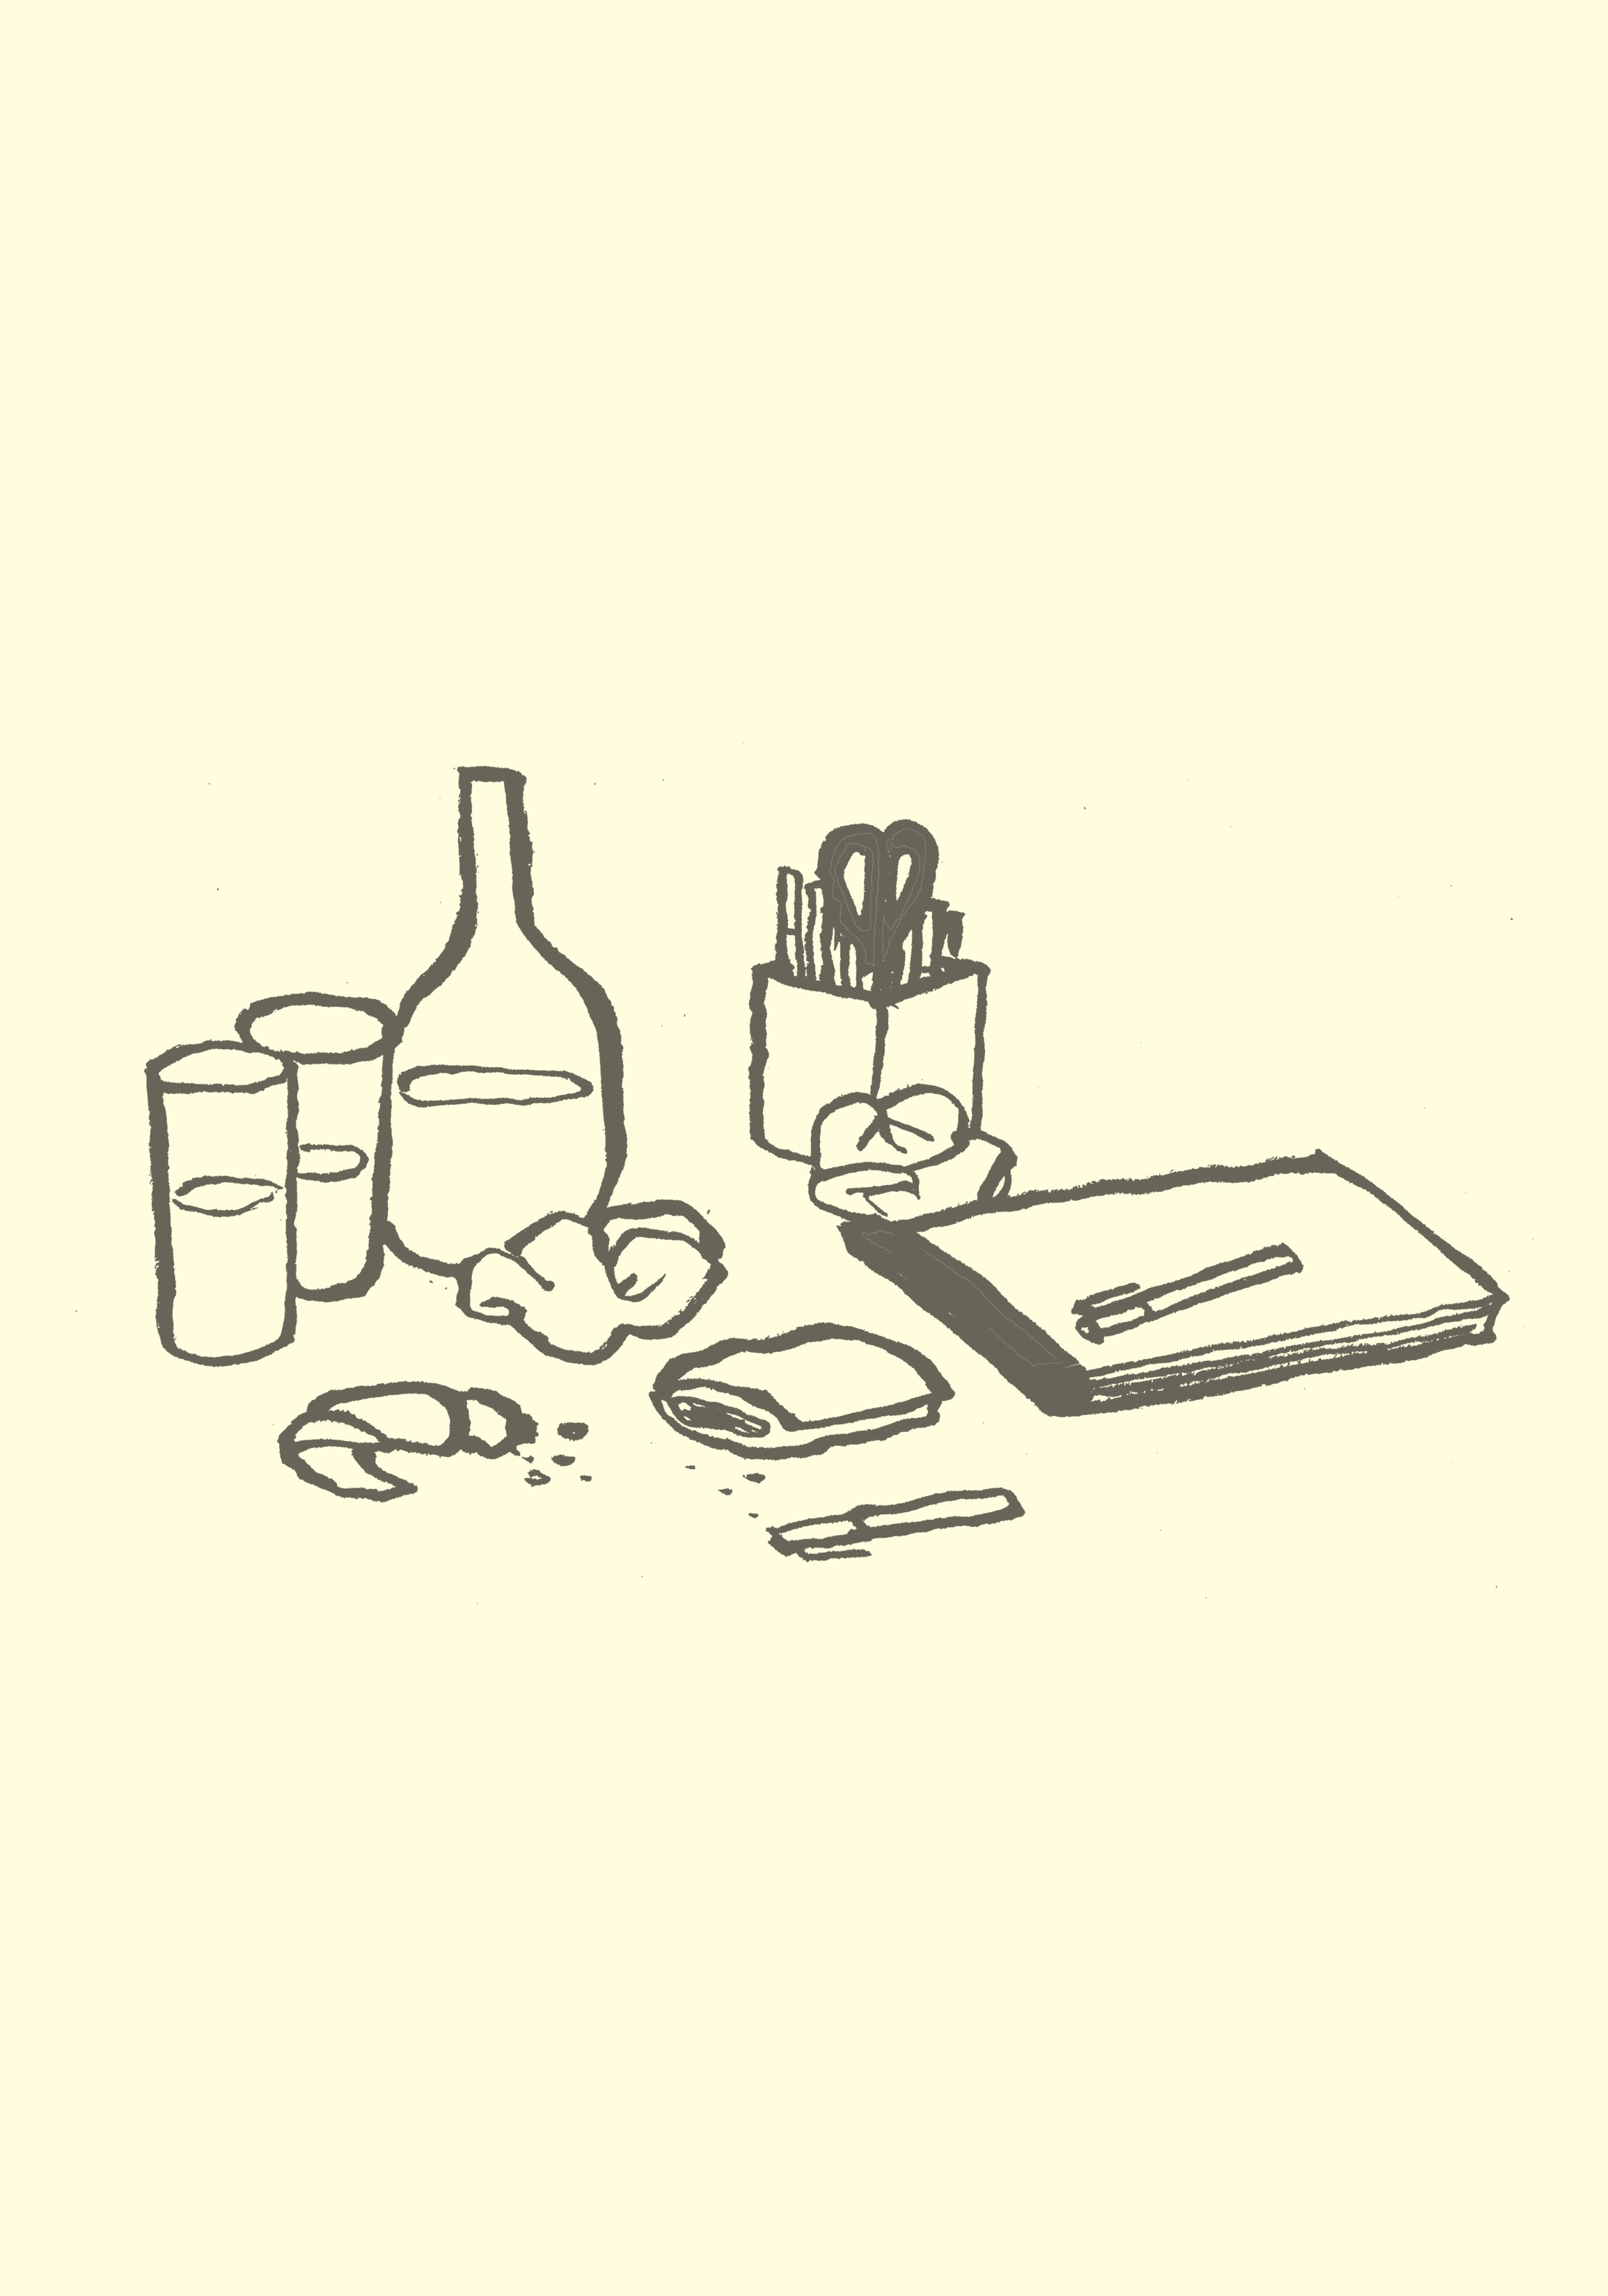 Un dessin animé montrant les restes d'une réunion, y compris des collations, des stylos, des blocs-notes et des verres à boissons.